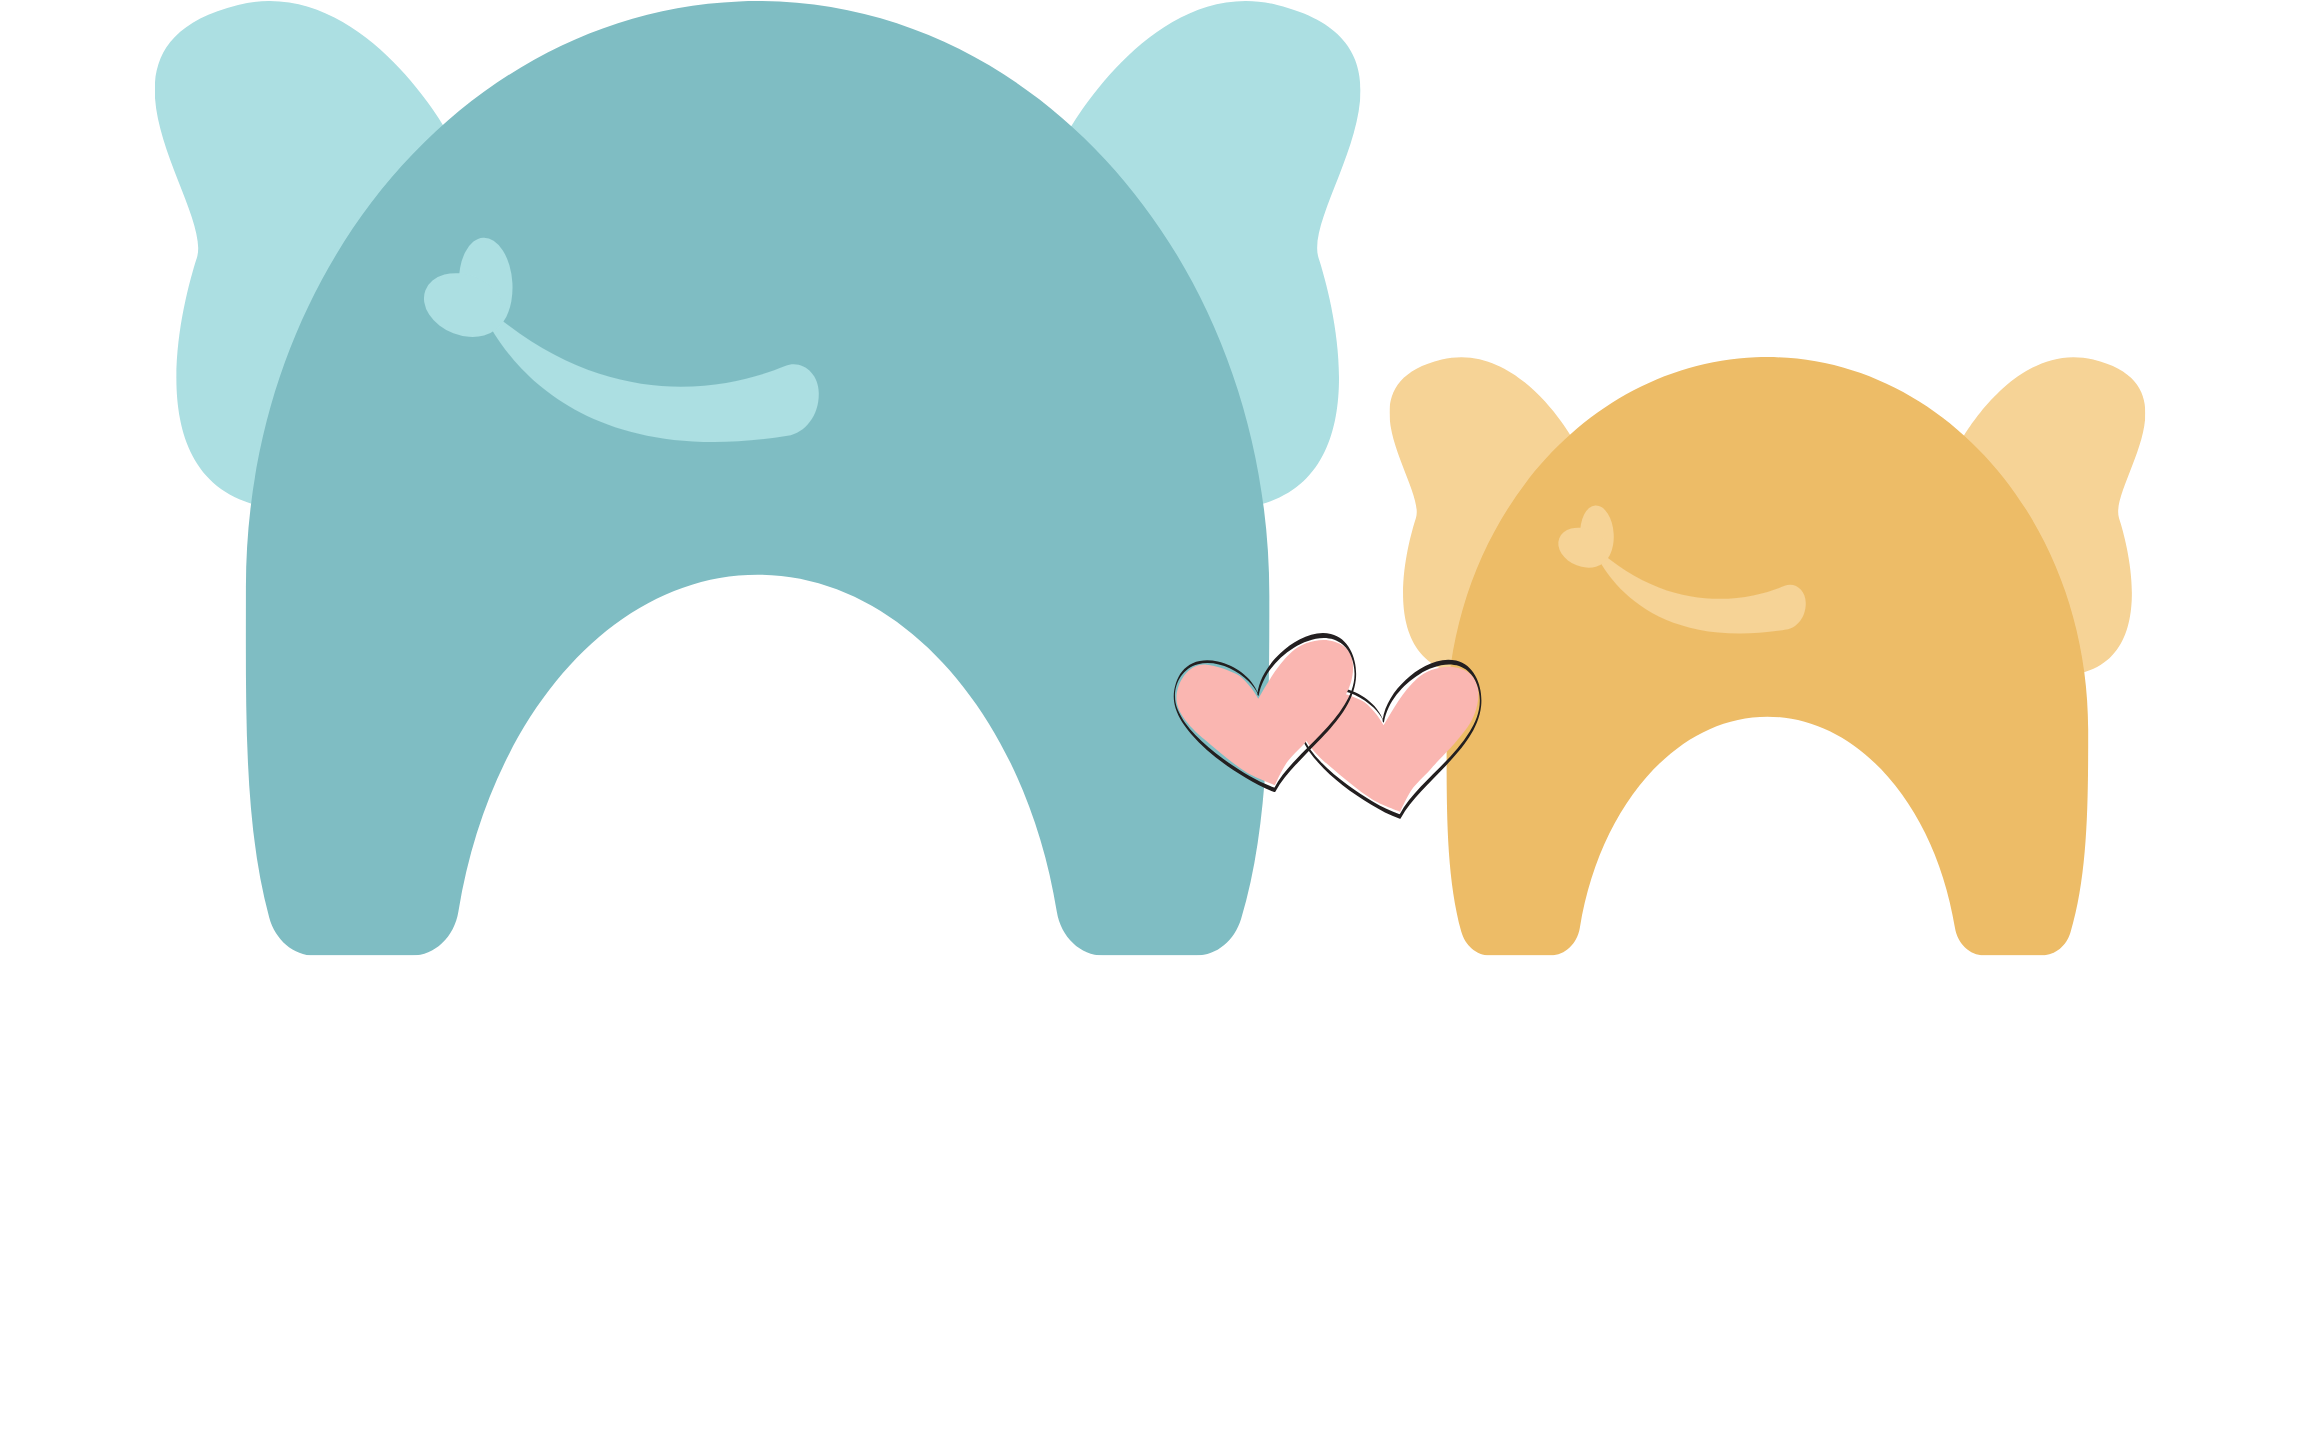 Fernando & James